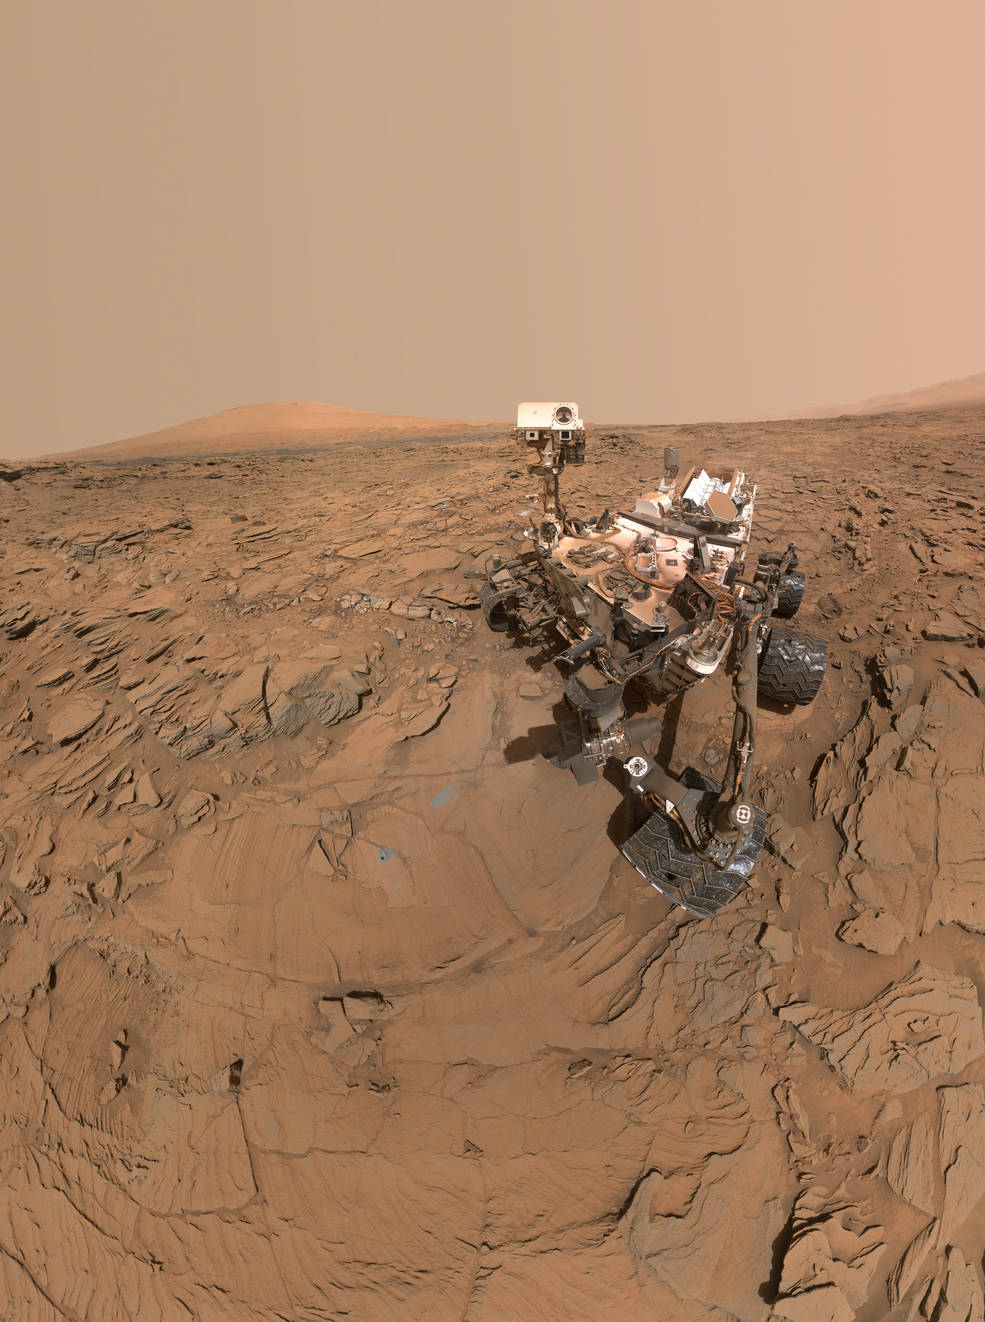 این عکسی که مشاهده میکنید سلفی مریخ نورد مریخ میباشد که در پاسگاه حفر شده در بخش Naukluft  از پایین دامنه کوهی در مریخ میباشد 